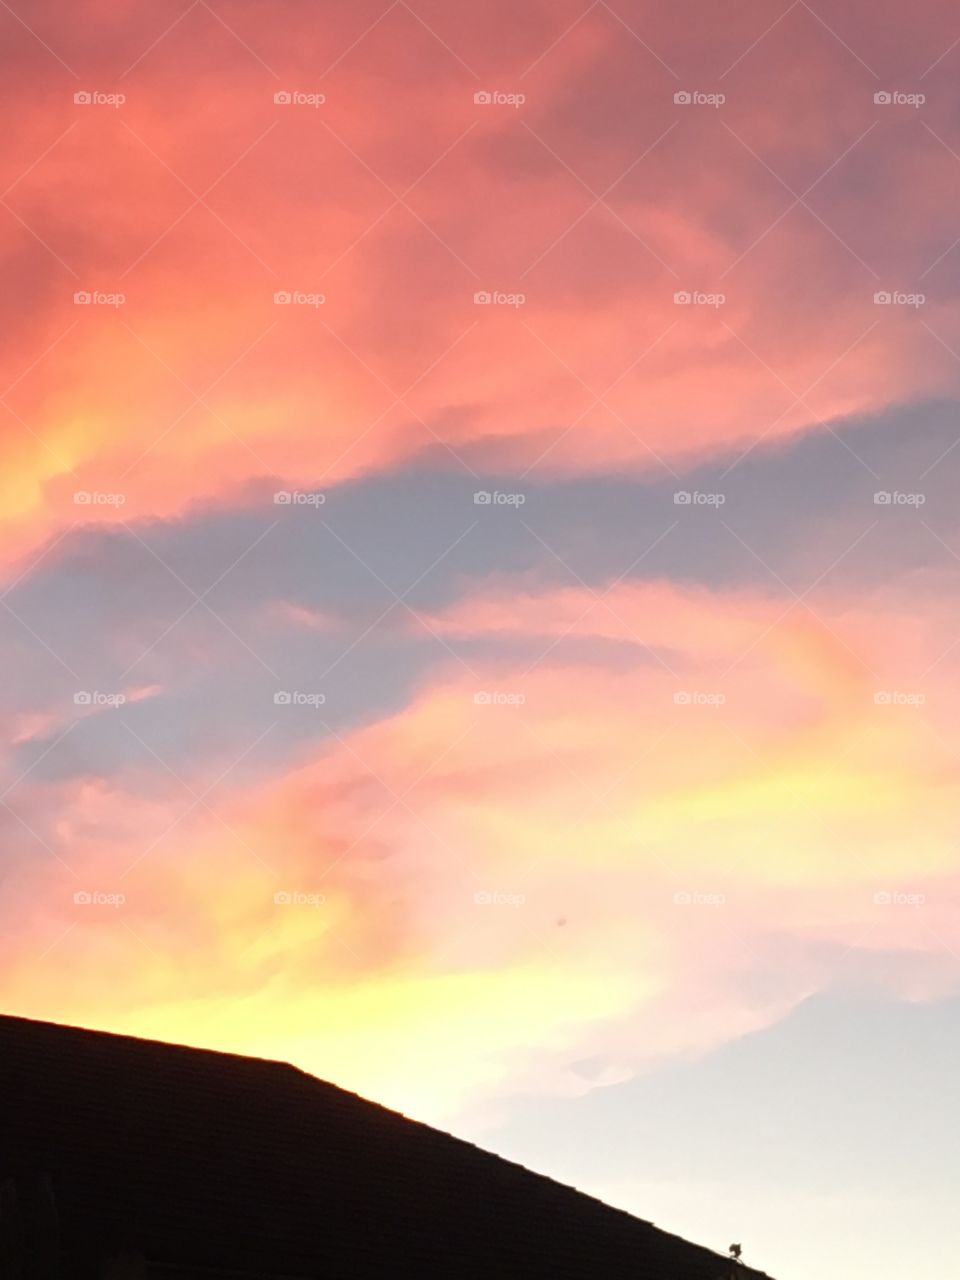 Buffalo, NY sky at sunset June 2018